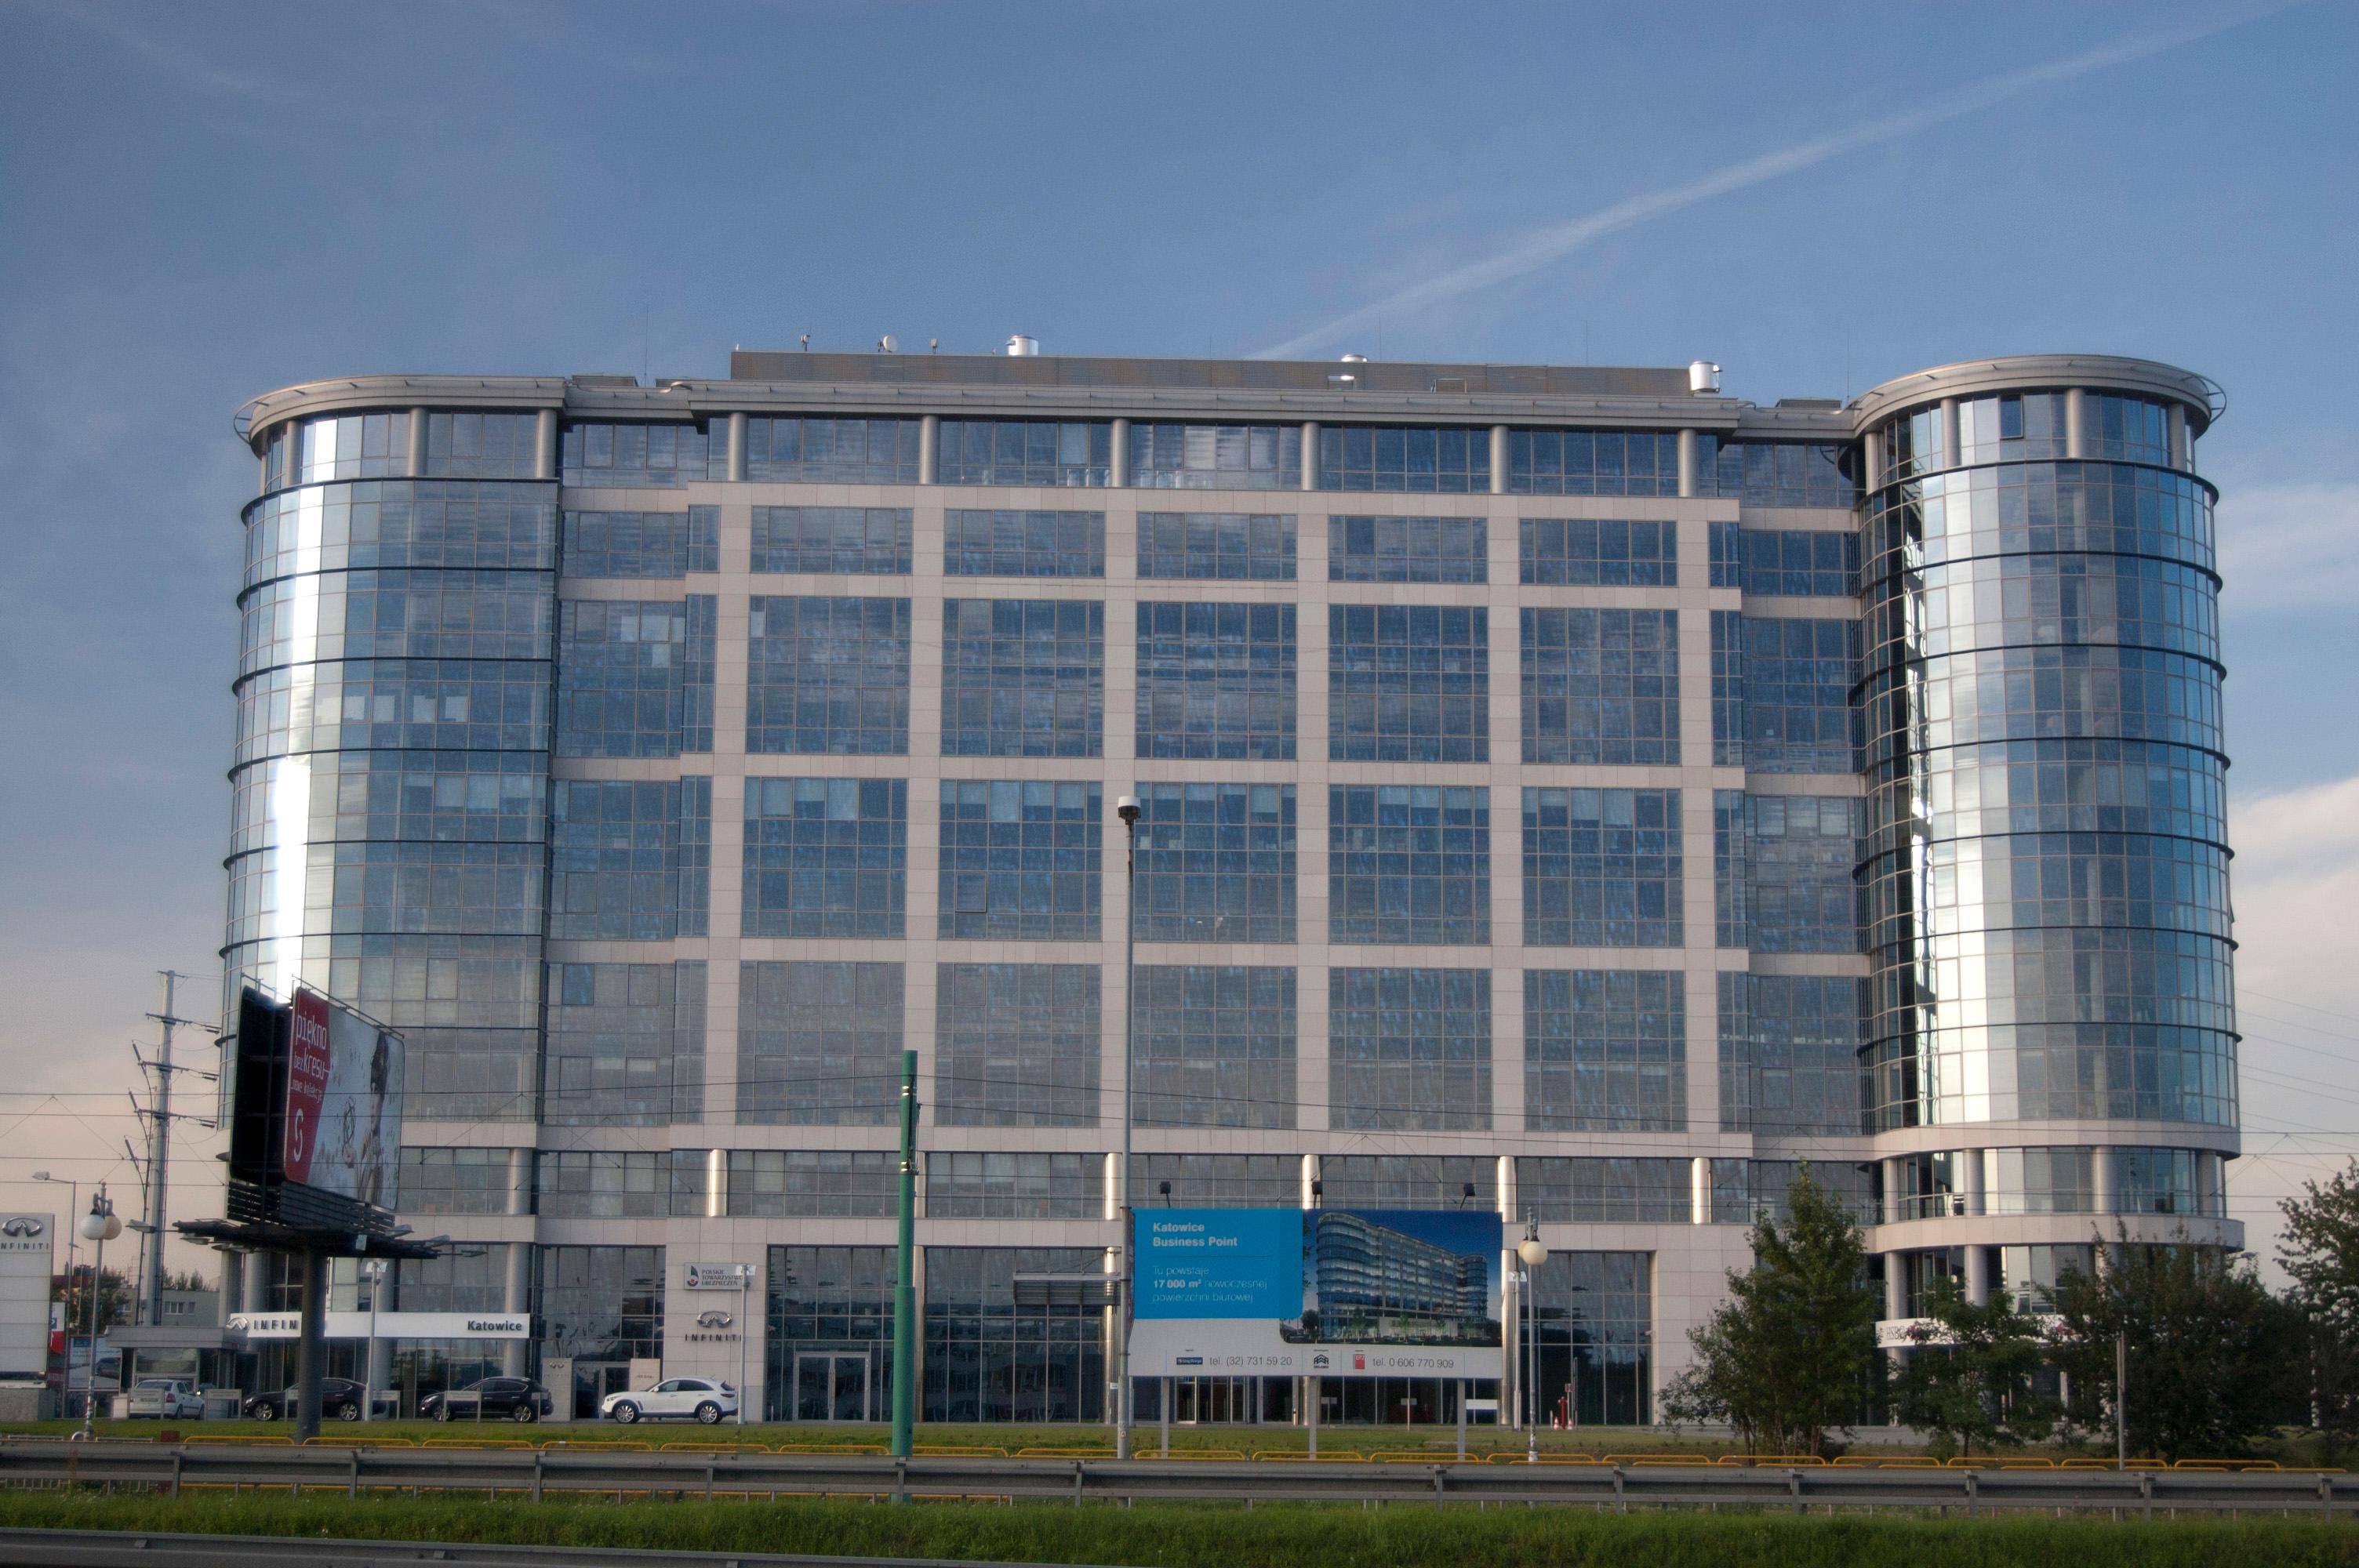 Zlokalizowany w centrum Katowic Bussines Point - jeden z największych biurowców w mieście.